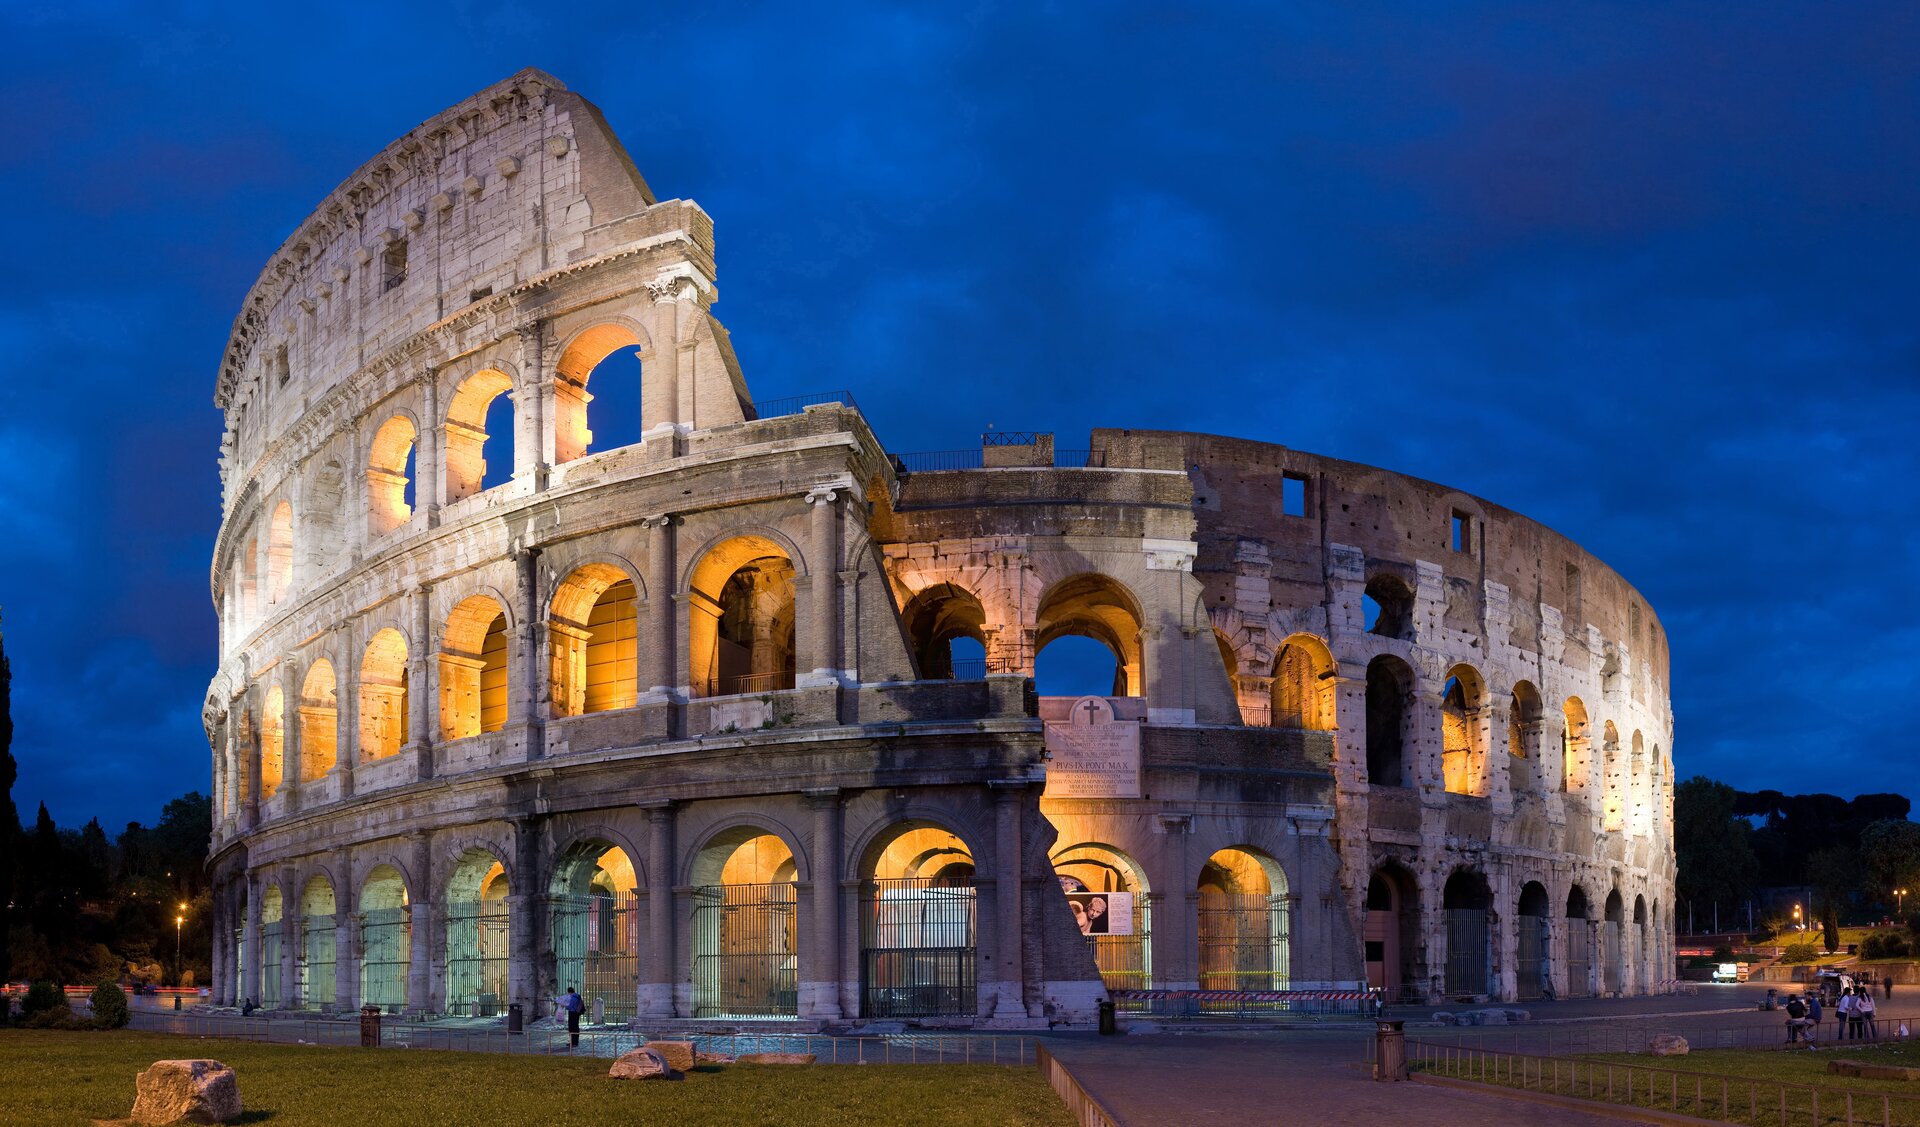 Ilustracja banerowa przedstawia fragment Koloseum, oficjalnie w starożytności Amfiteatr Flawiuszów wzniesiony w latach 70-72 do 80 n.e. przez cesarzy z dynastii Flawiuszów. W kadrze znajduje się górna część budowli, częściowo w ruinie. wszystkie cztery kondygnacje są oddzielone gzymsem. najmniej widoczna jest najniższa i najwyższa kondygnacja. Obiekt przedstawiony jest na tle ciemnego nieba i wewnątrz oświetlony żółtym światłem reflektorów.